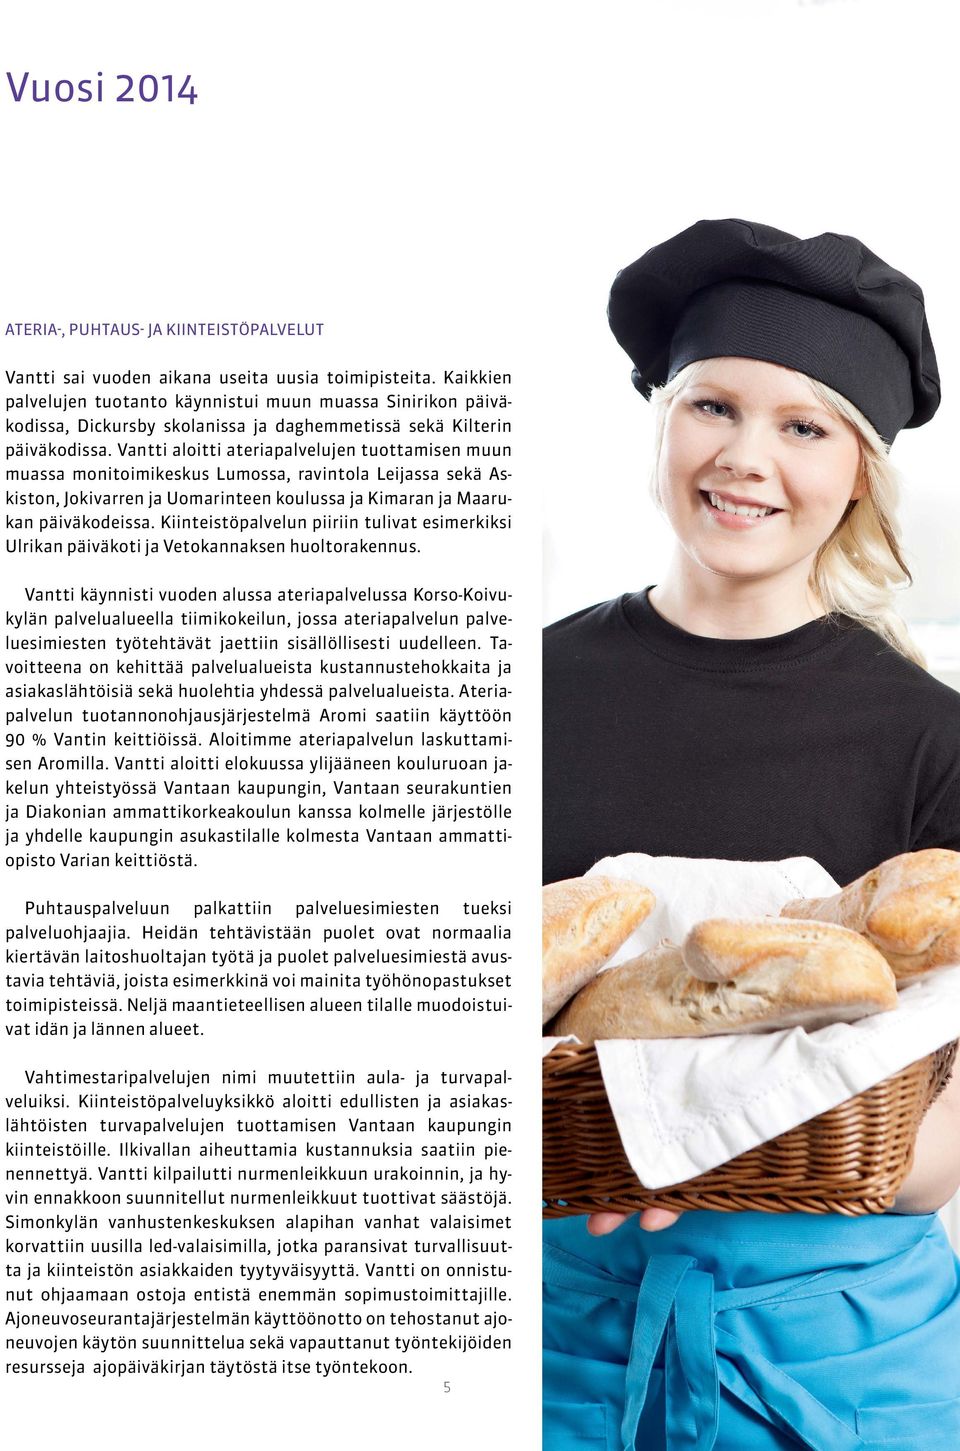 Vantti aloitti ateriapalvelujen tuottamisen muun muassa monitoimikeskus Lumossa, ravintola Leijassa sekä Askiston, Jokivarren ja Uomarinteen koulussa ja Kimaran ja Maarukan päiväkodeissa.